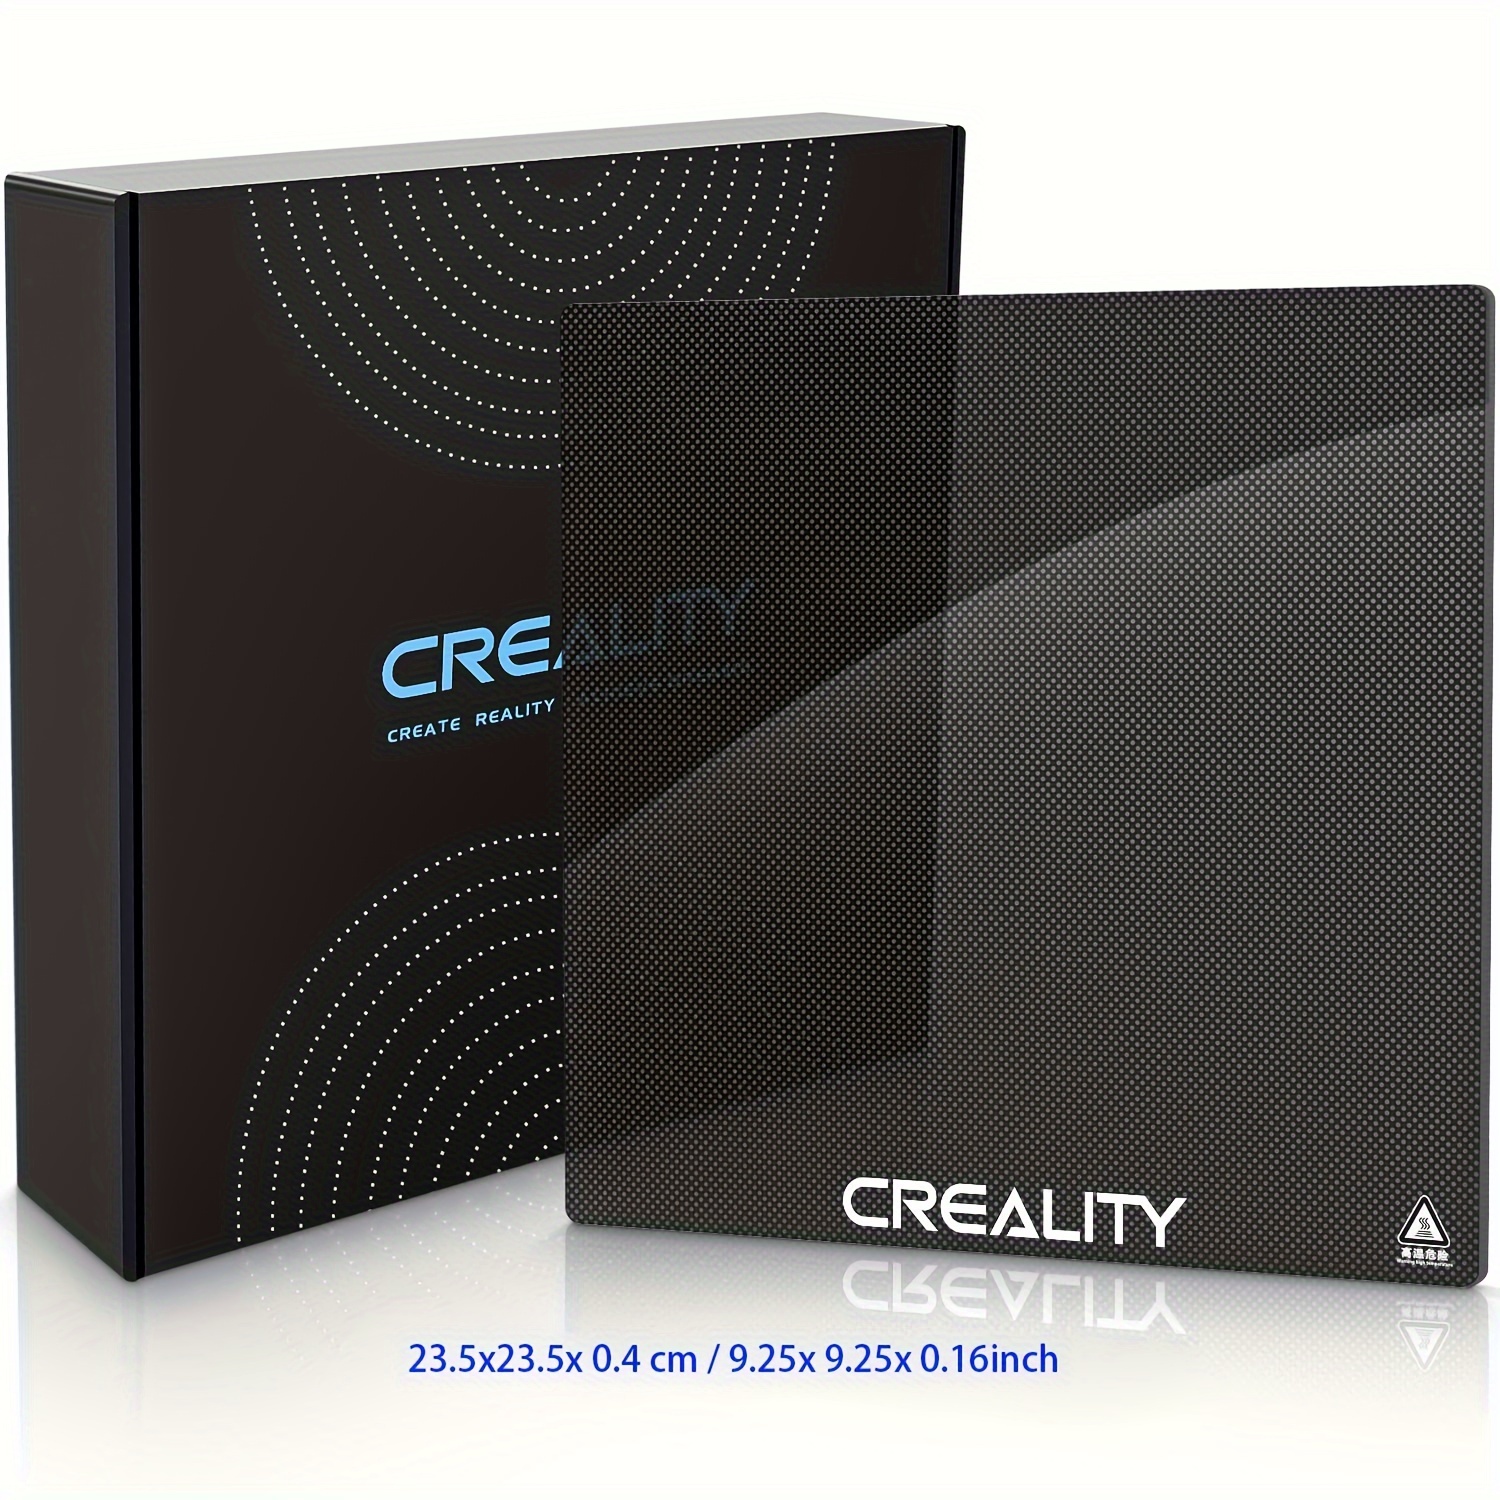 Résolu] Creality Ender 3 + Plateau verre : pb d'adhérence - Creality -  Forum pour les imprimantes 3D et l'impression 3D